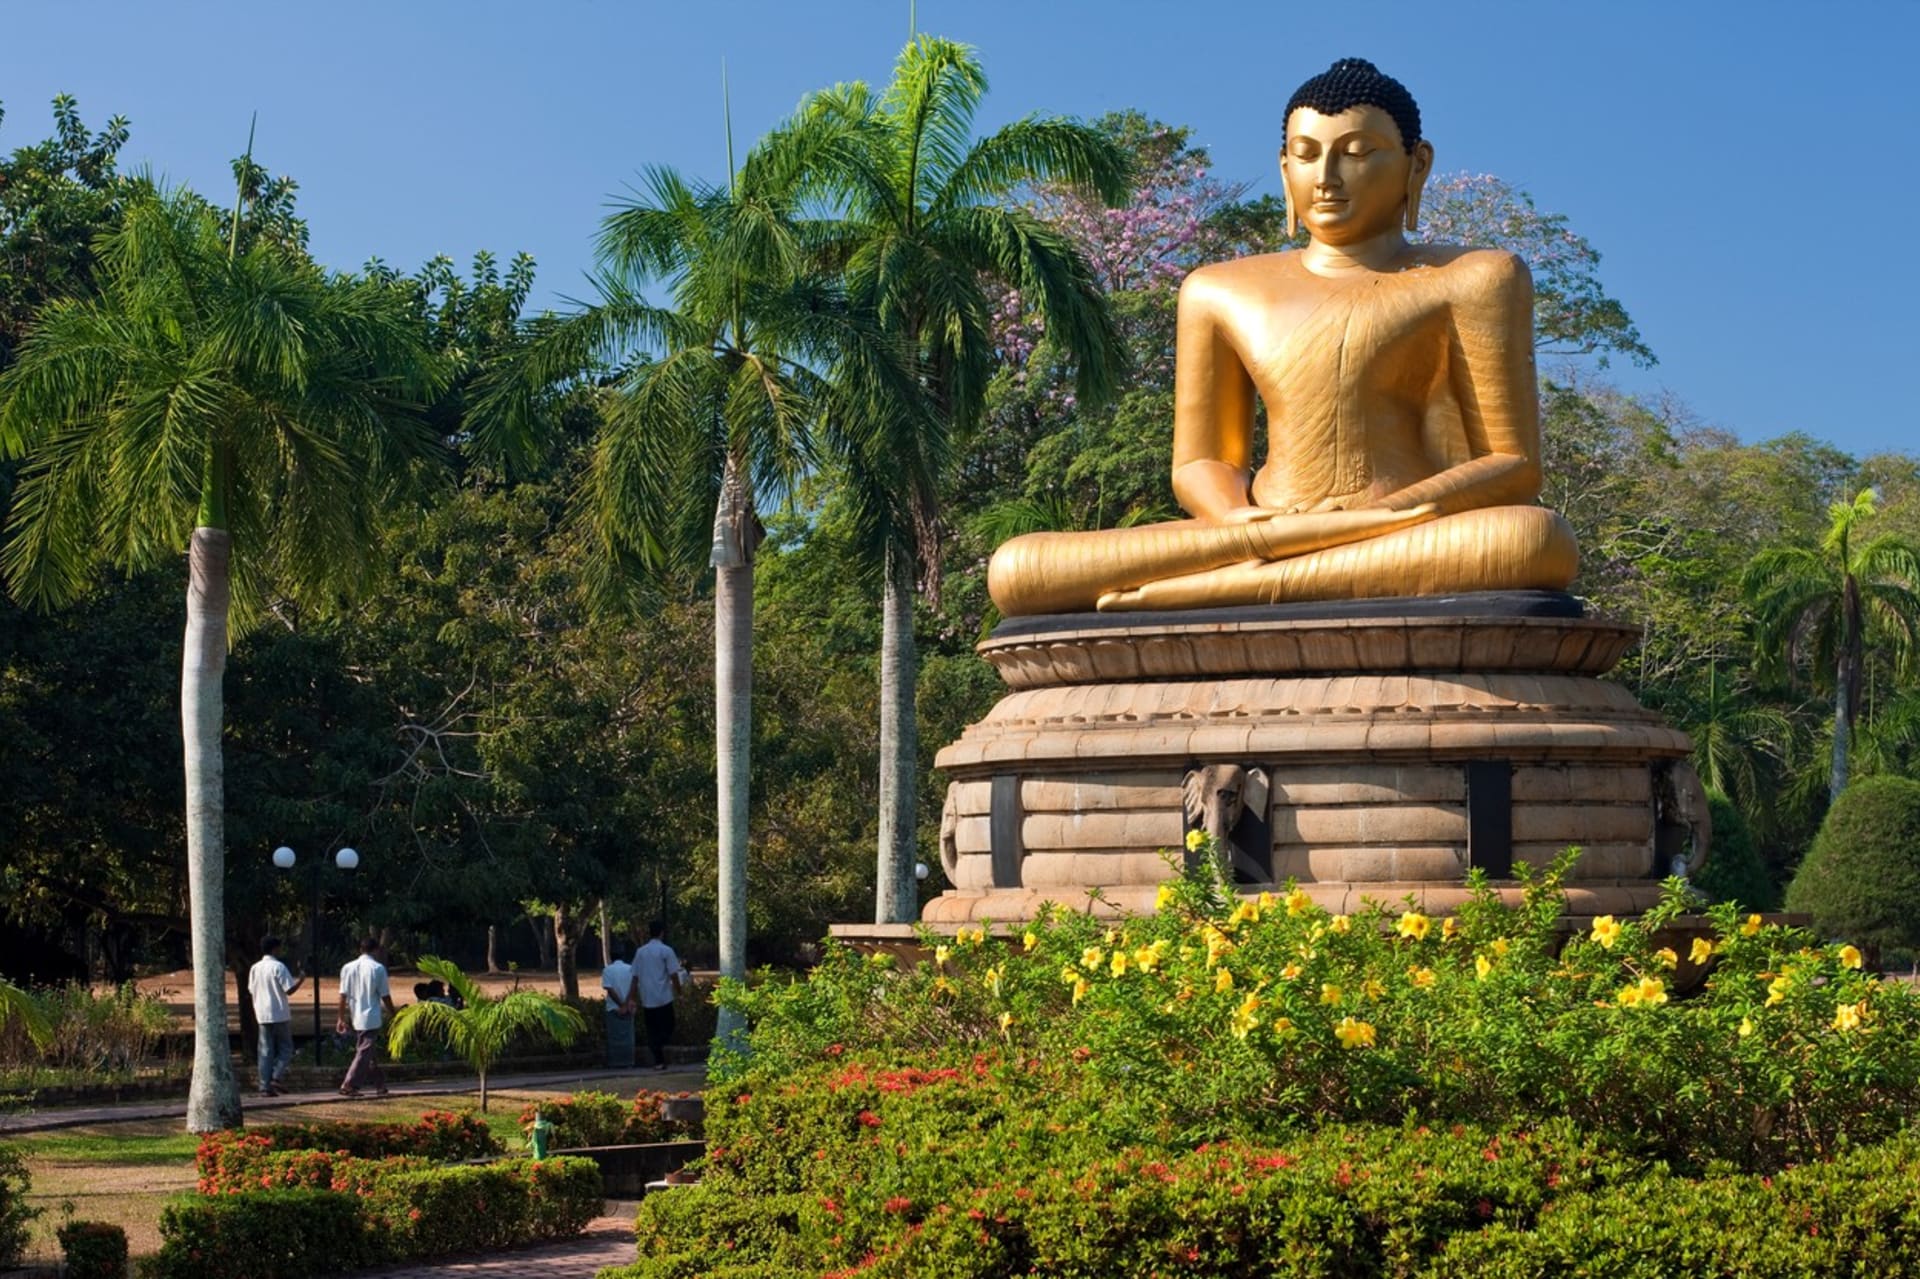 Socha Buddhy na okraji srílanské metropole Kolomba